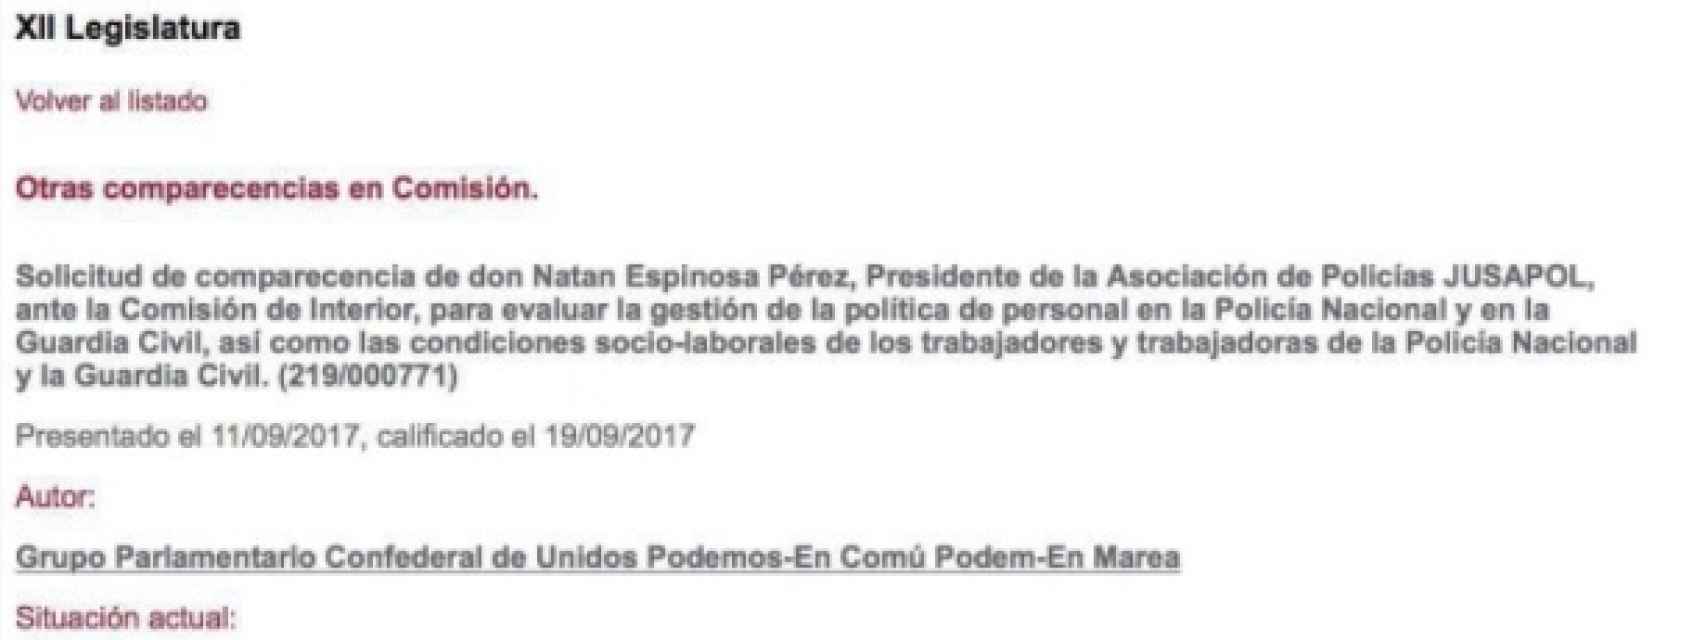 La invitación de Unidos Podemos recogida en la web de Congreso.